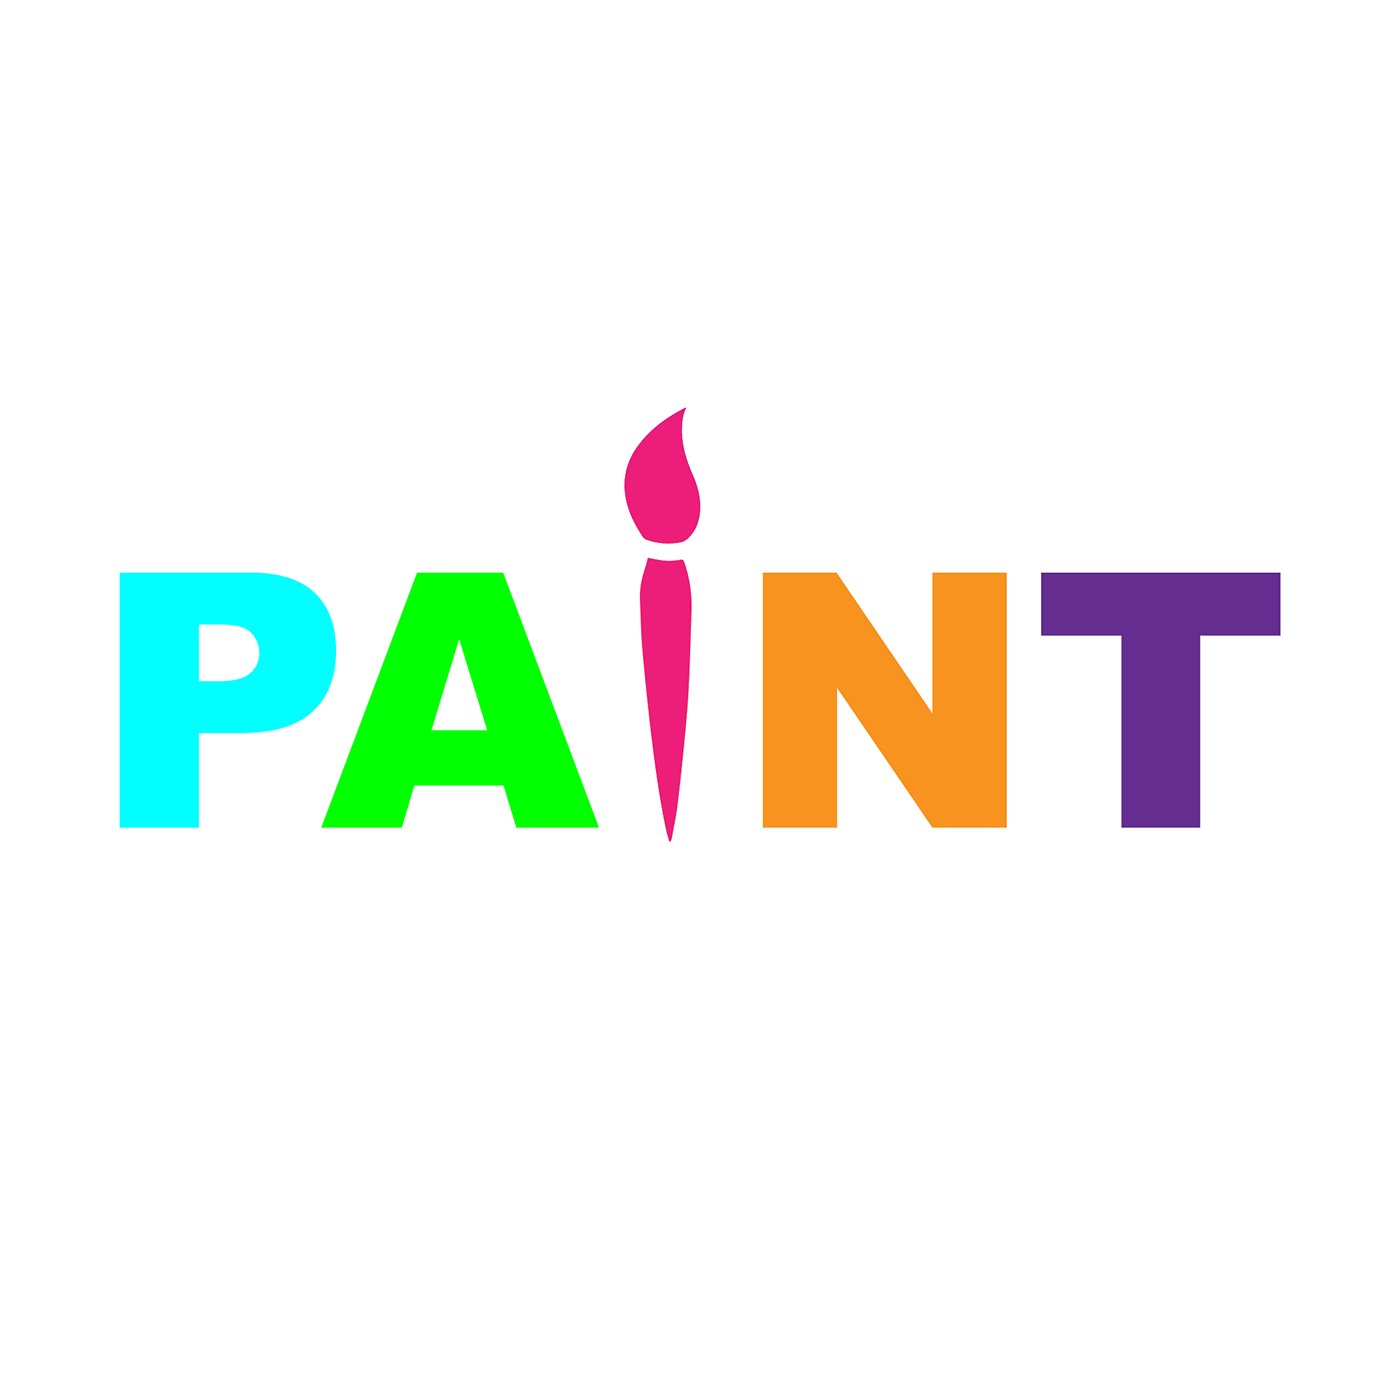 Paint App Logo - Paint App Logo